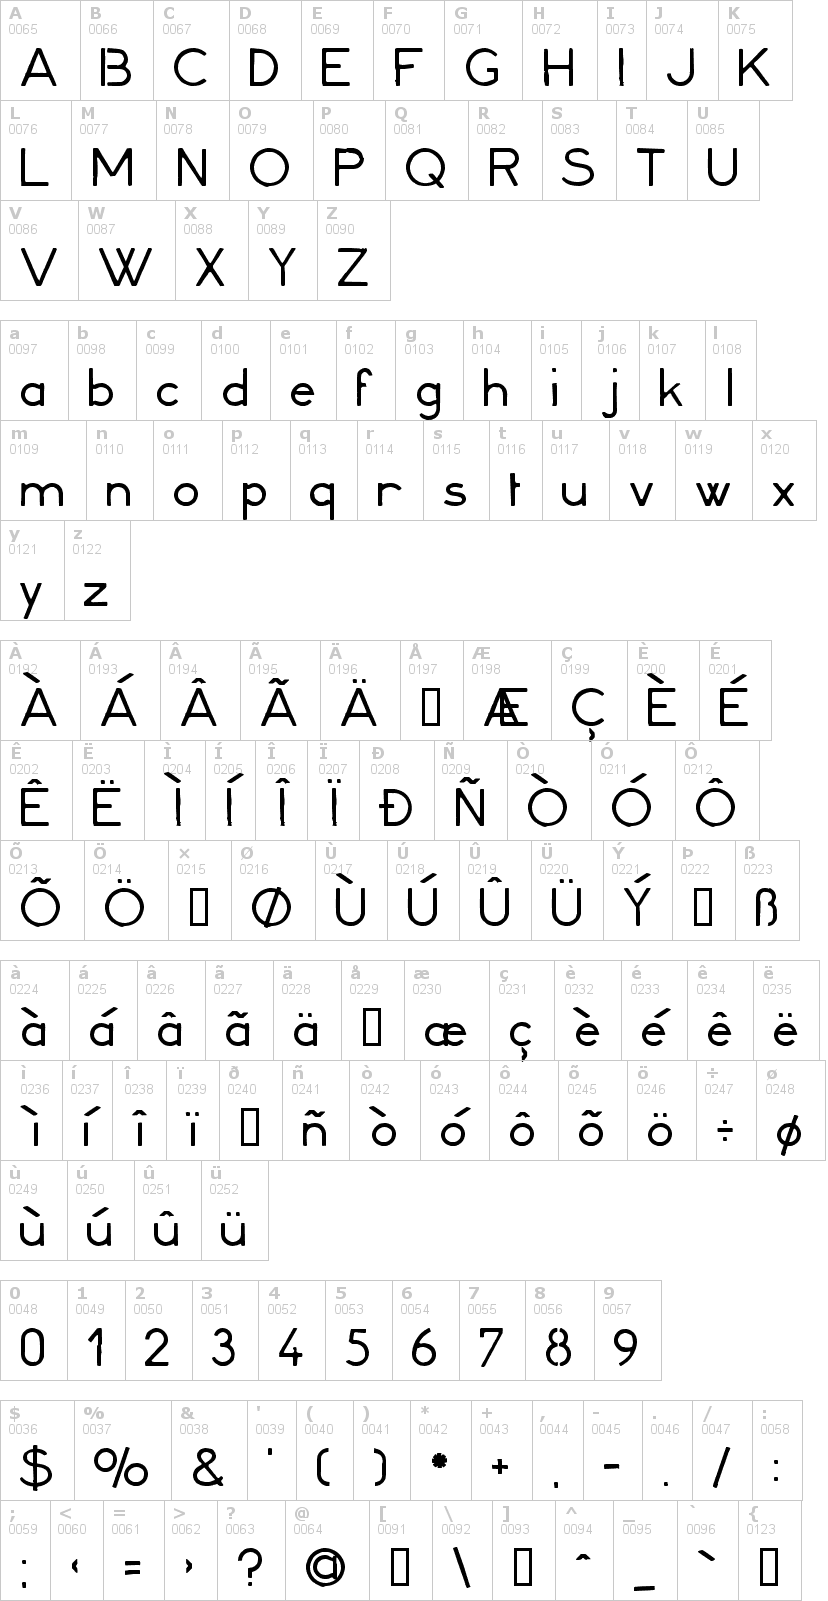 Lettere dell'alfabeto del font minerva16 con le quali è possibile realizzare adesivi prespaziati